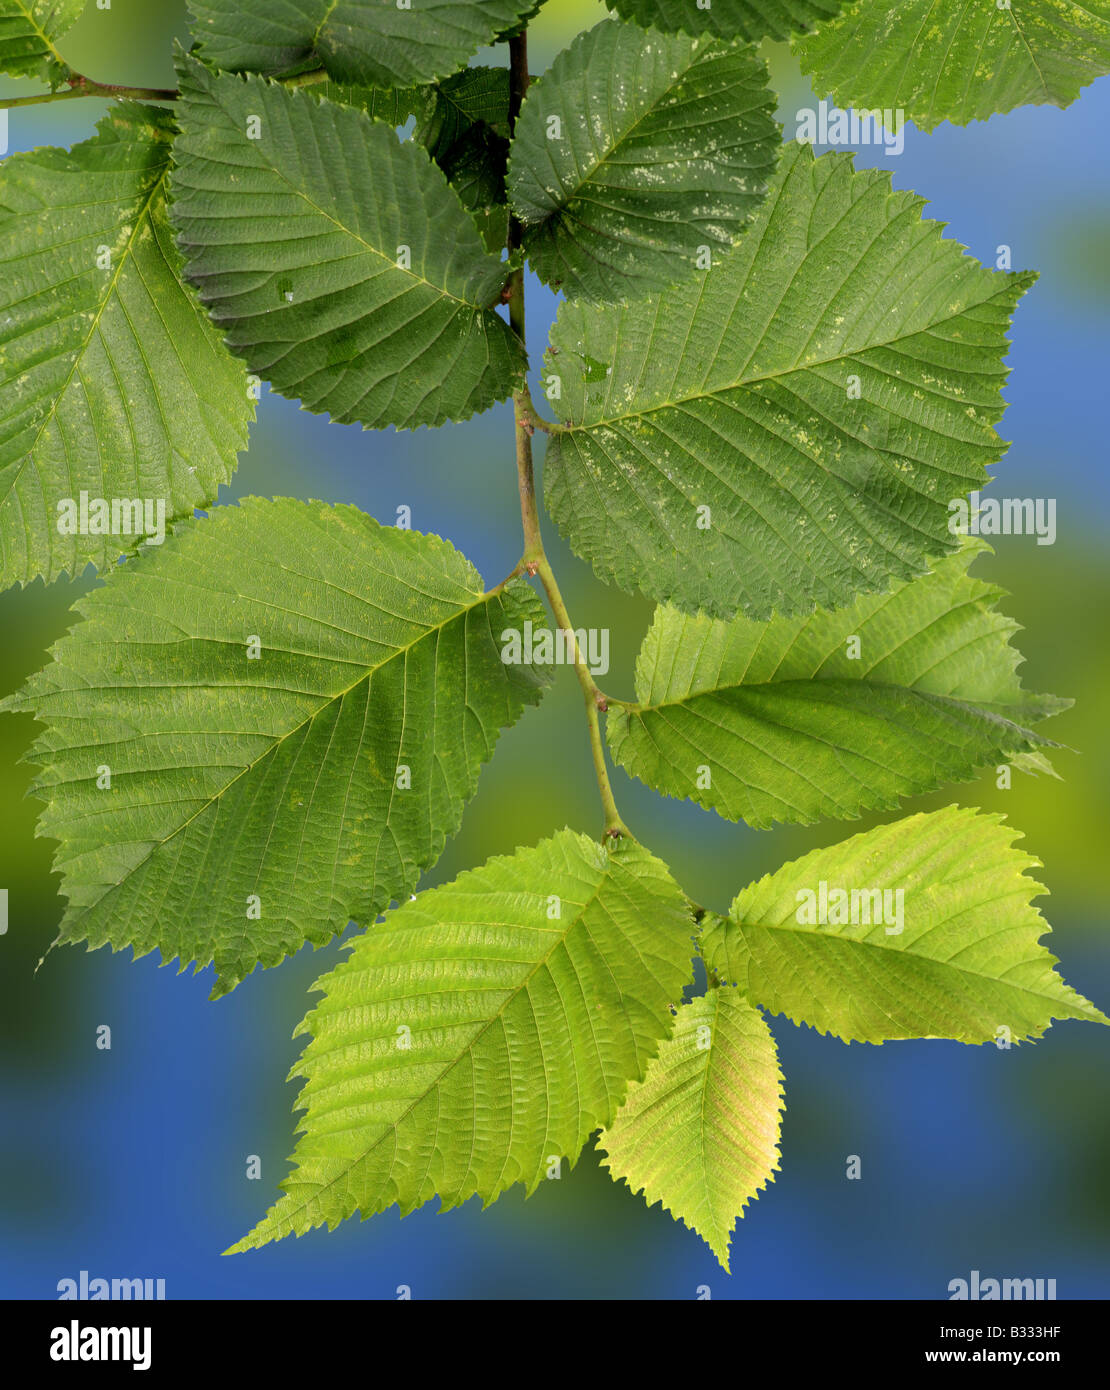 Ulmus glabra, Ulmus scabra, Scotch elm, wych elm Stock Photo